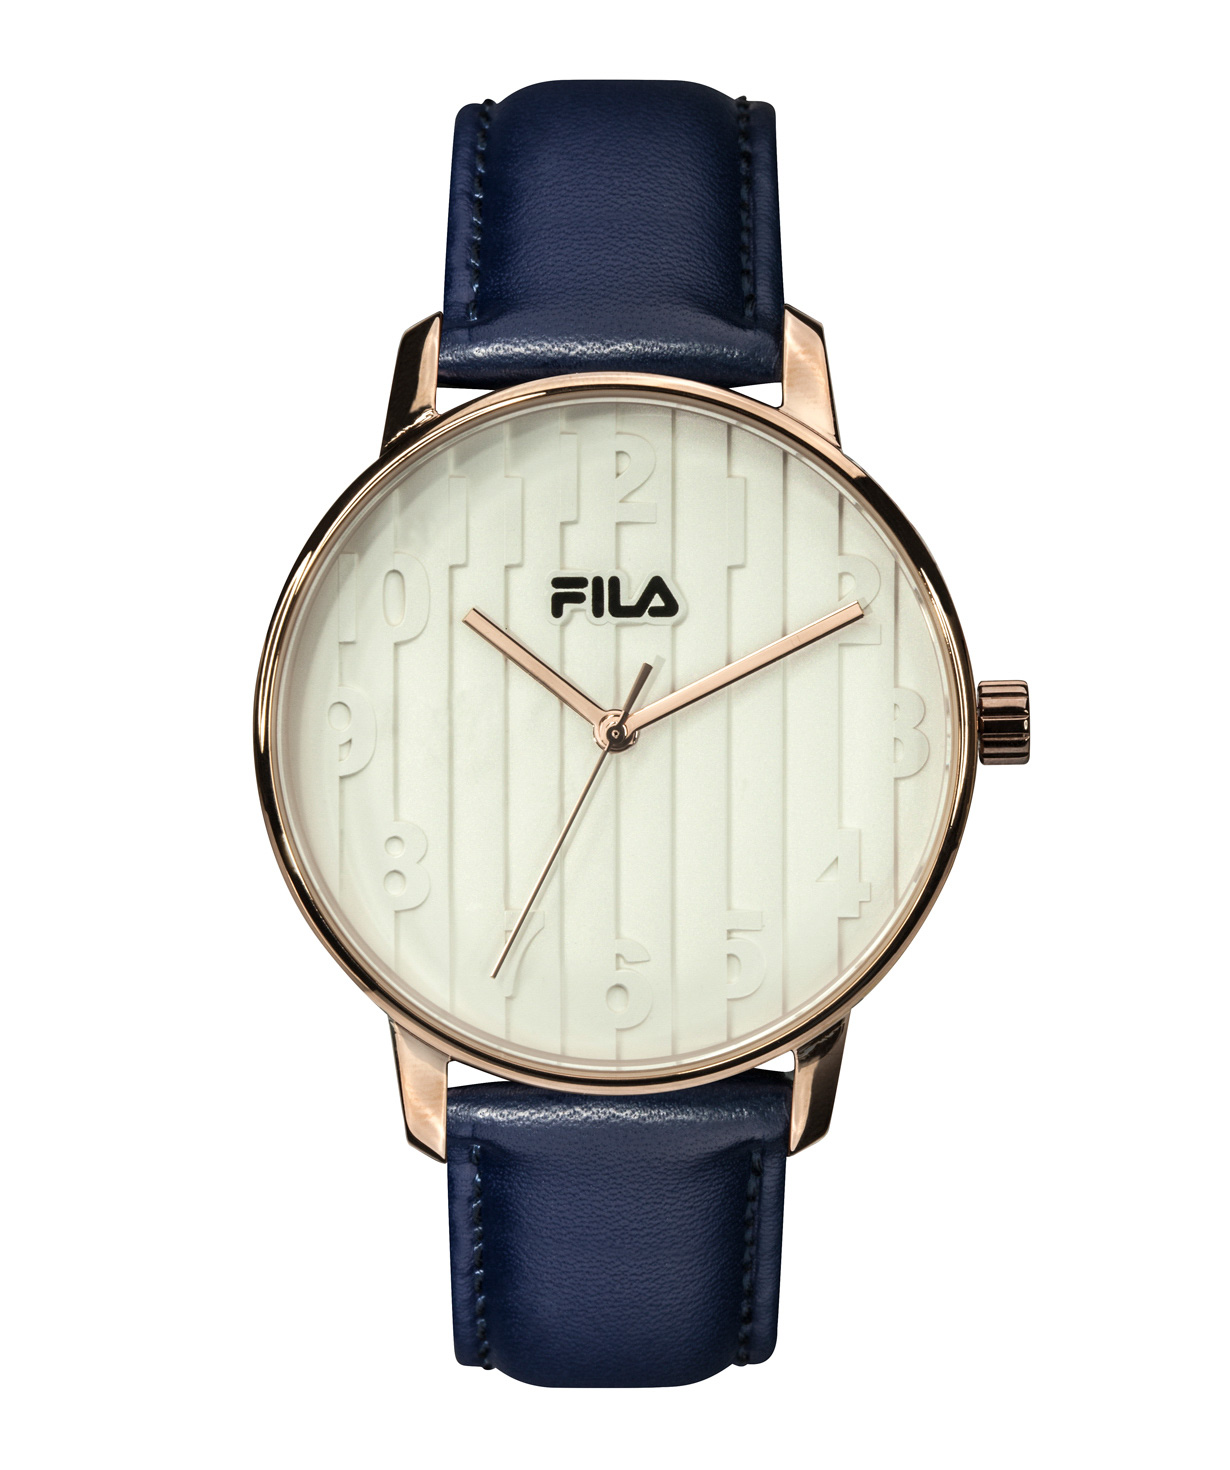 Ժամացույց «FILA» 38-197-002 կանացի